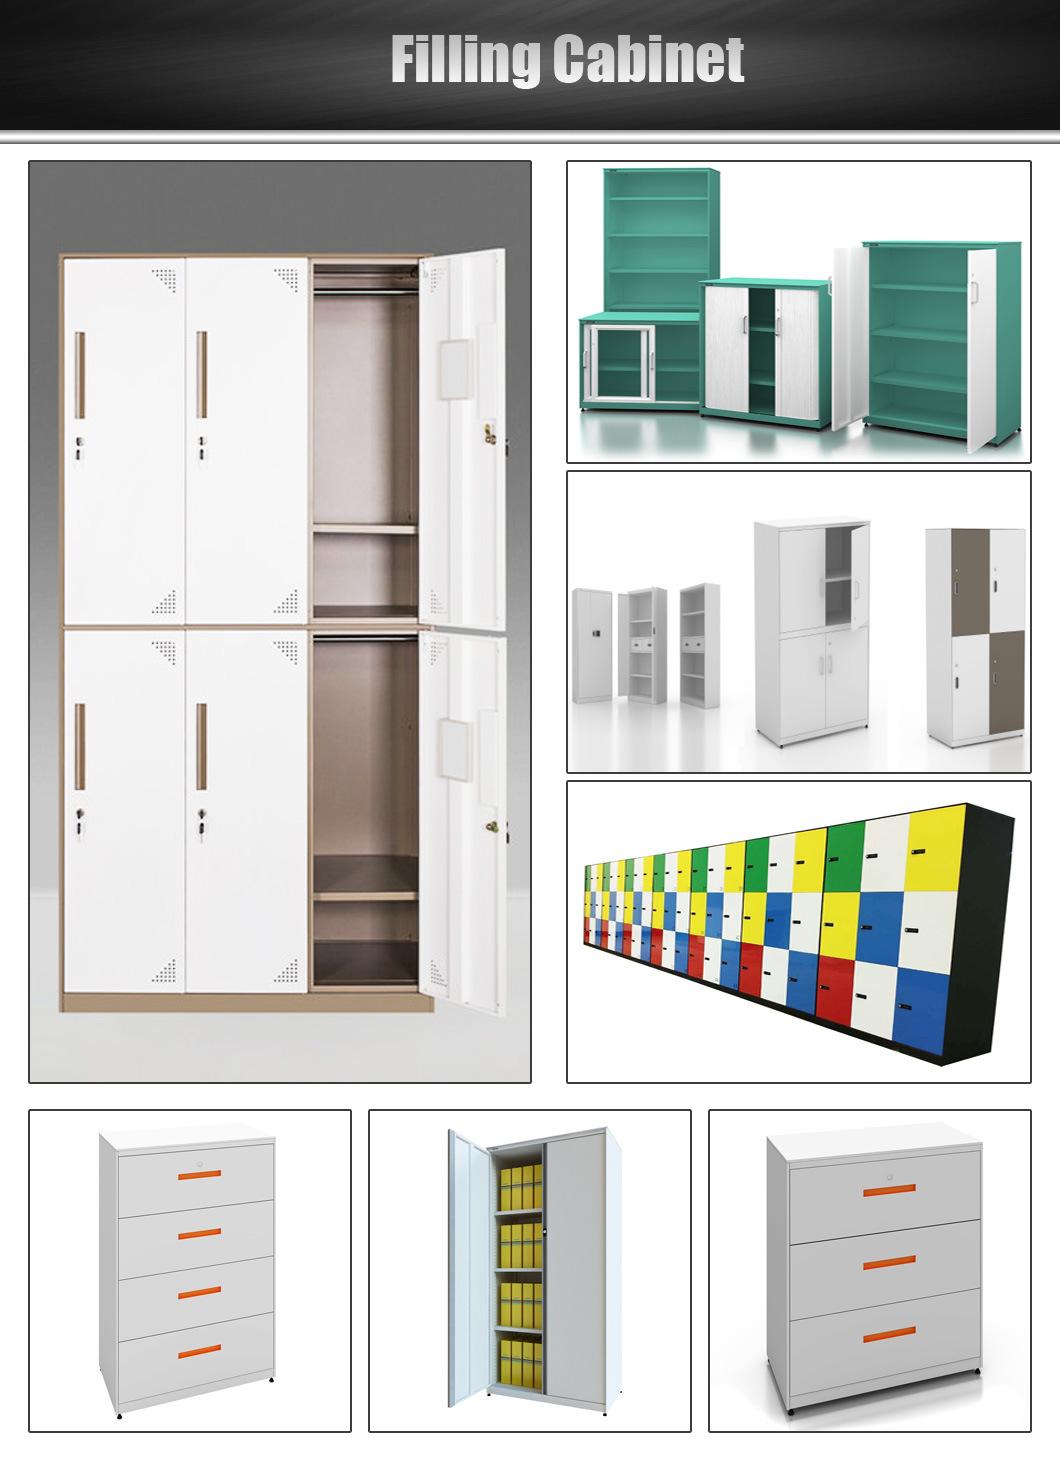 Light Gray/Drak Gray/Shell/Celadon/Beige Combined Type Finger Print Postal Box Locker